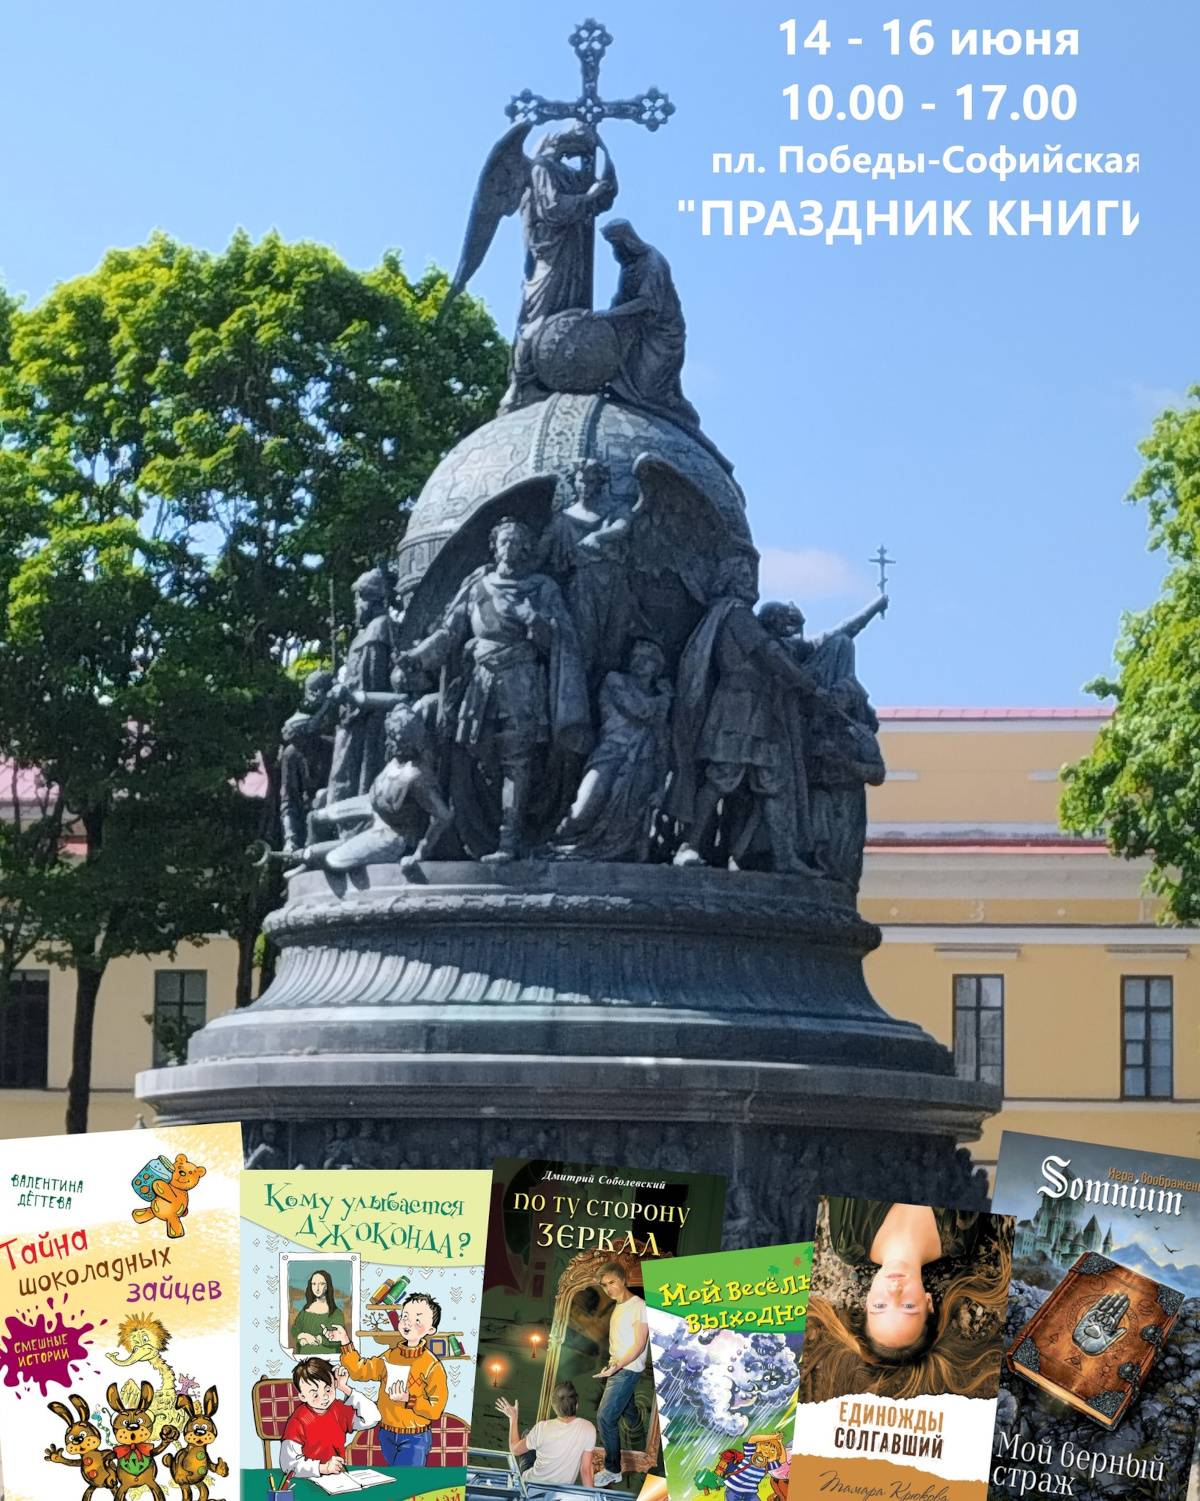 В этом году «Праздник книги» впервые состоится в формате книжного фестиваля в самом сердце Великого Новгорода — на площади Победы-Софийская.